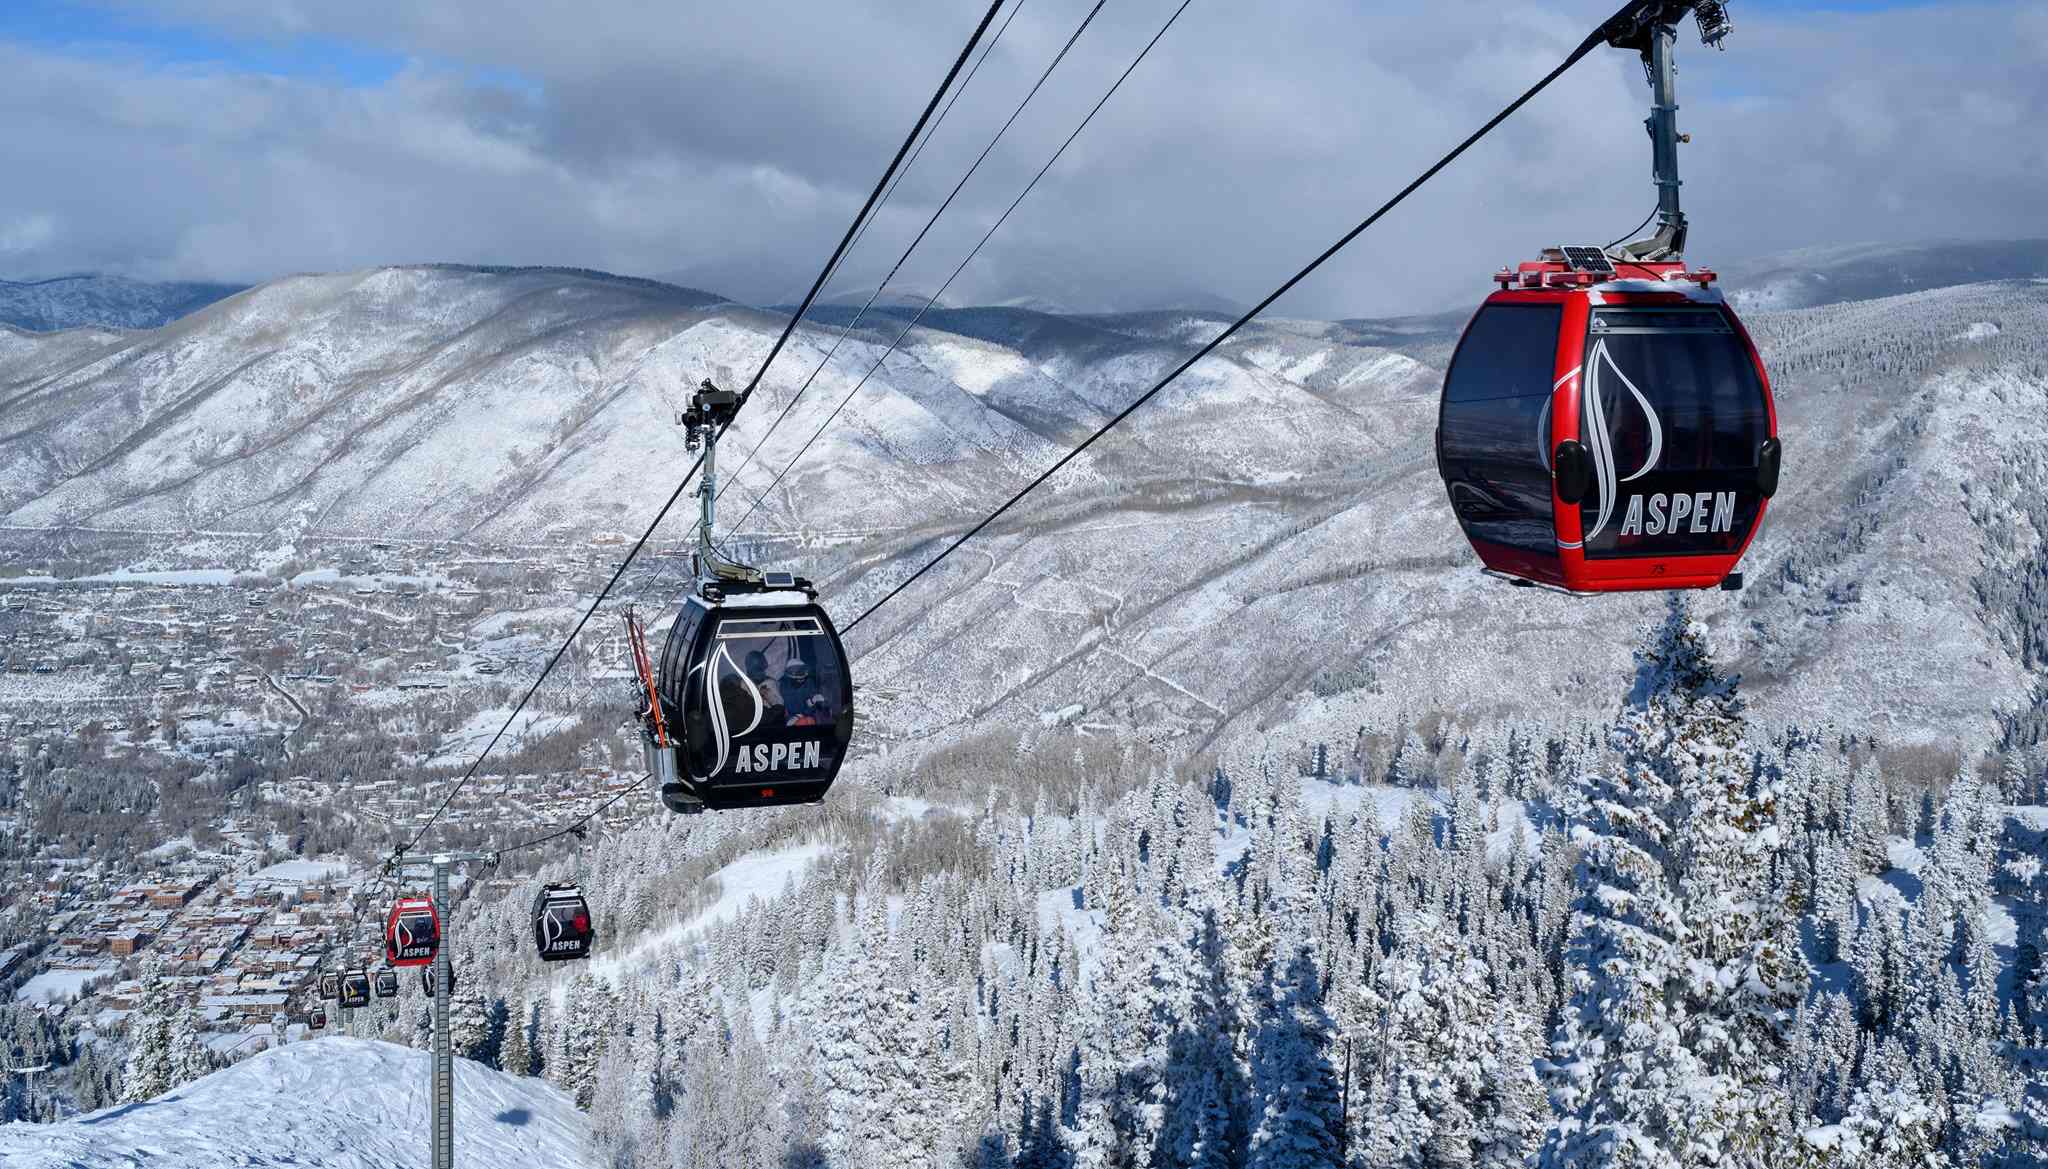 La temporada de esquí en EE. UU. cierra con 61 millones de esquiadores